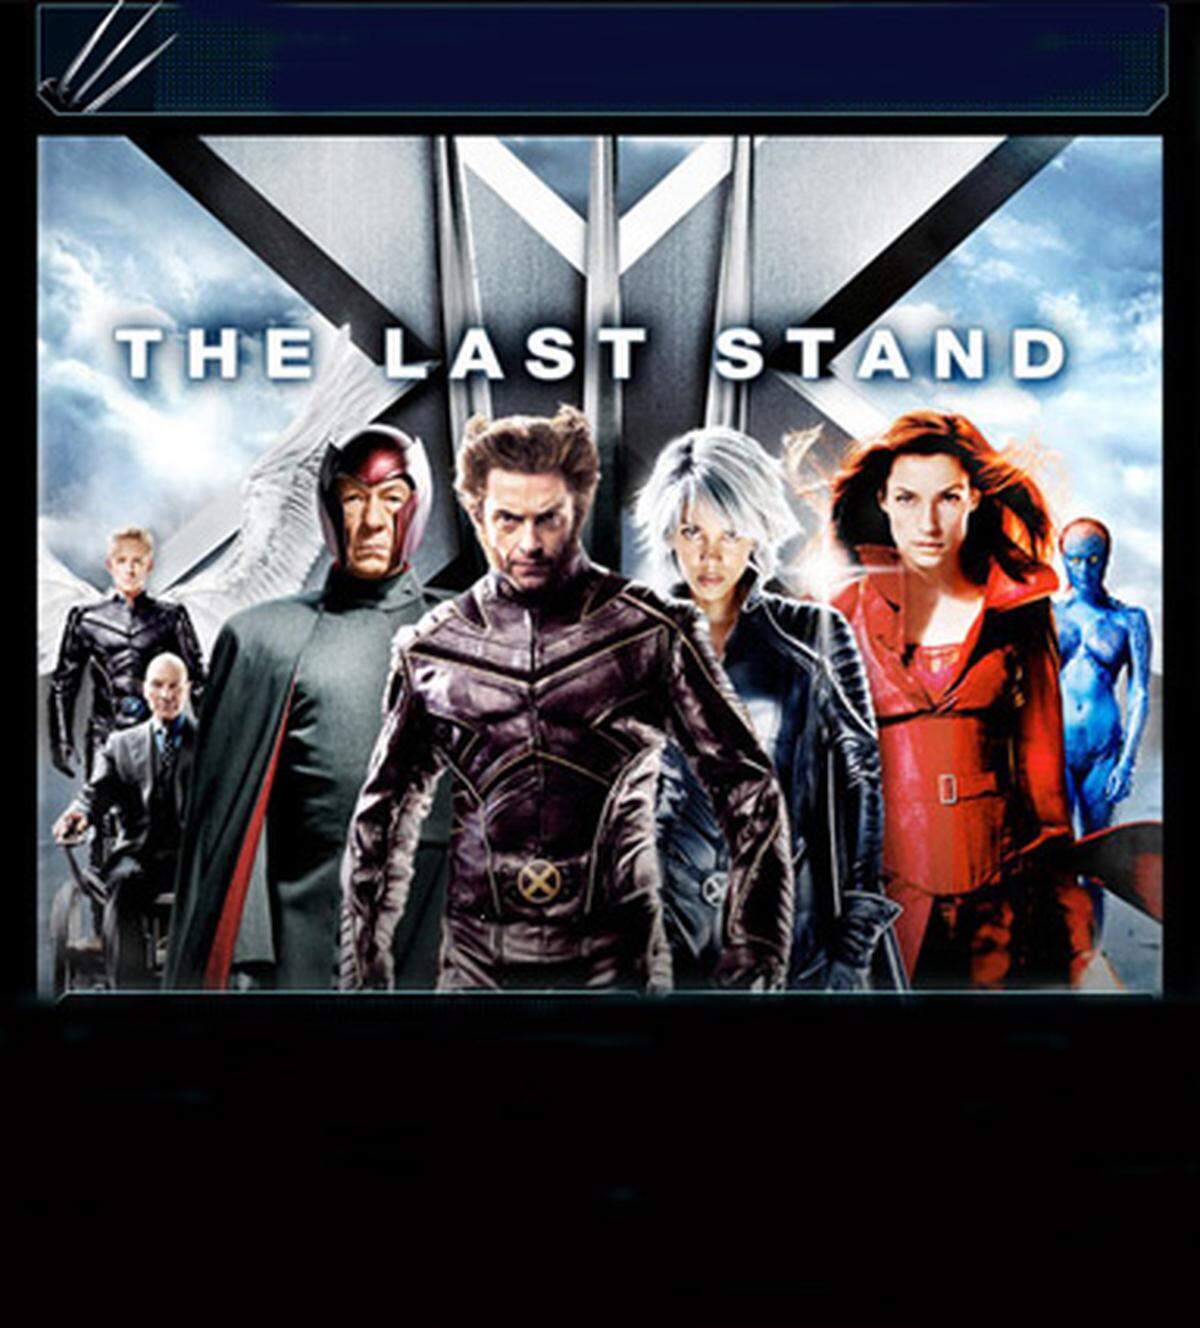 Mutanten, Telepathie und natürlich die Liebe in "X-Men 3": Die beiden X-Men Charles Xavier und Magneto geraten über ihre entgegengesetzten Ansichten in einen erbitterten Kampf. Es geht um die Wahlmöglichkeit, das "X"-Gen heilen zu lassen und damit die für Mutanten typischen außergewöhnlichen Kräfte aufzugeben. Im Mittelpunkt steht Jean Gray (Famke Janssen), im Hintergrund des Verwirrspiels – angeblich – die Frage nach Toleranz.